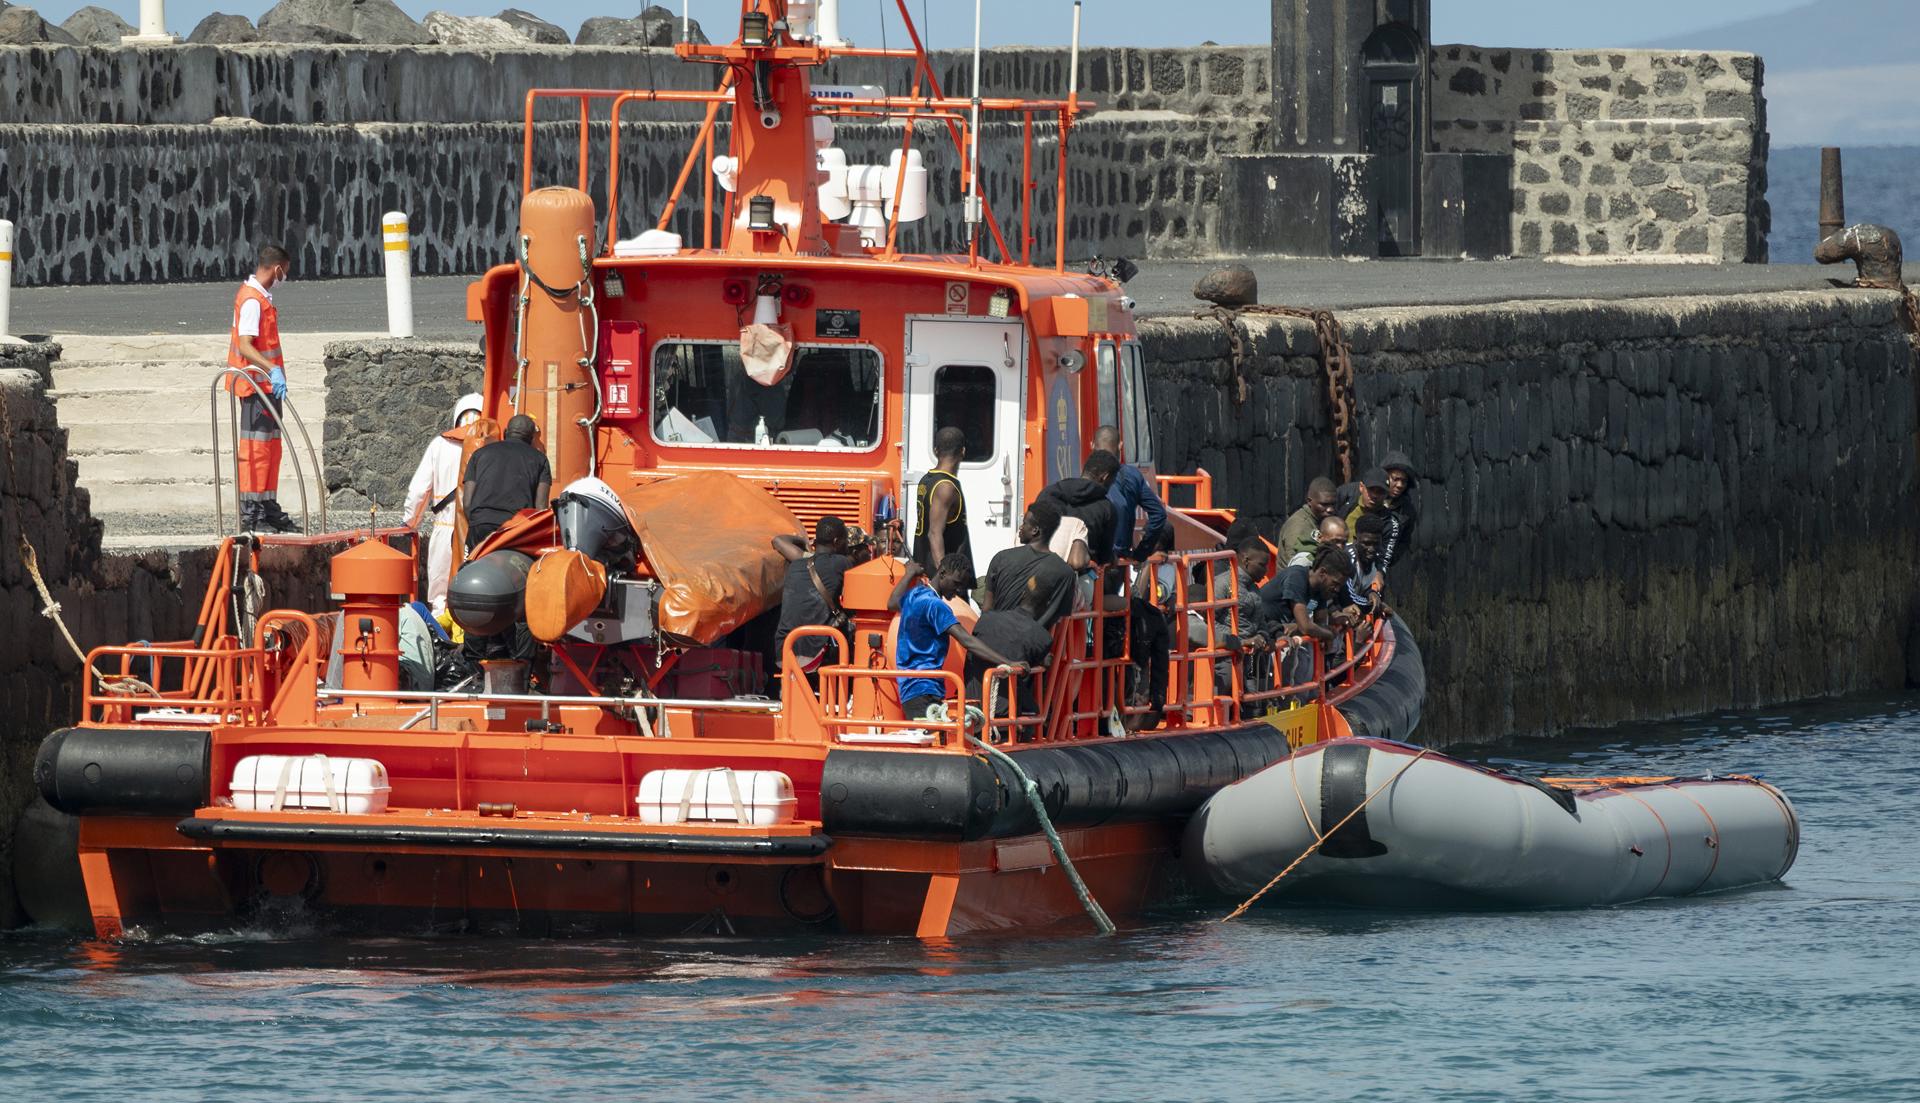 Foto de archivo de la llegada a Lanzarote de un barco de Salvamento Marítimo con una zódiac rescatada. EFE/ Adriel Perdomo